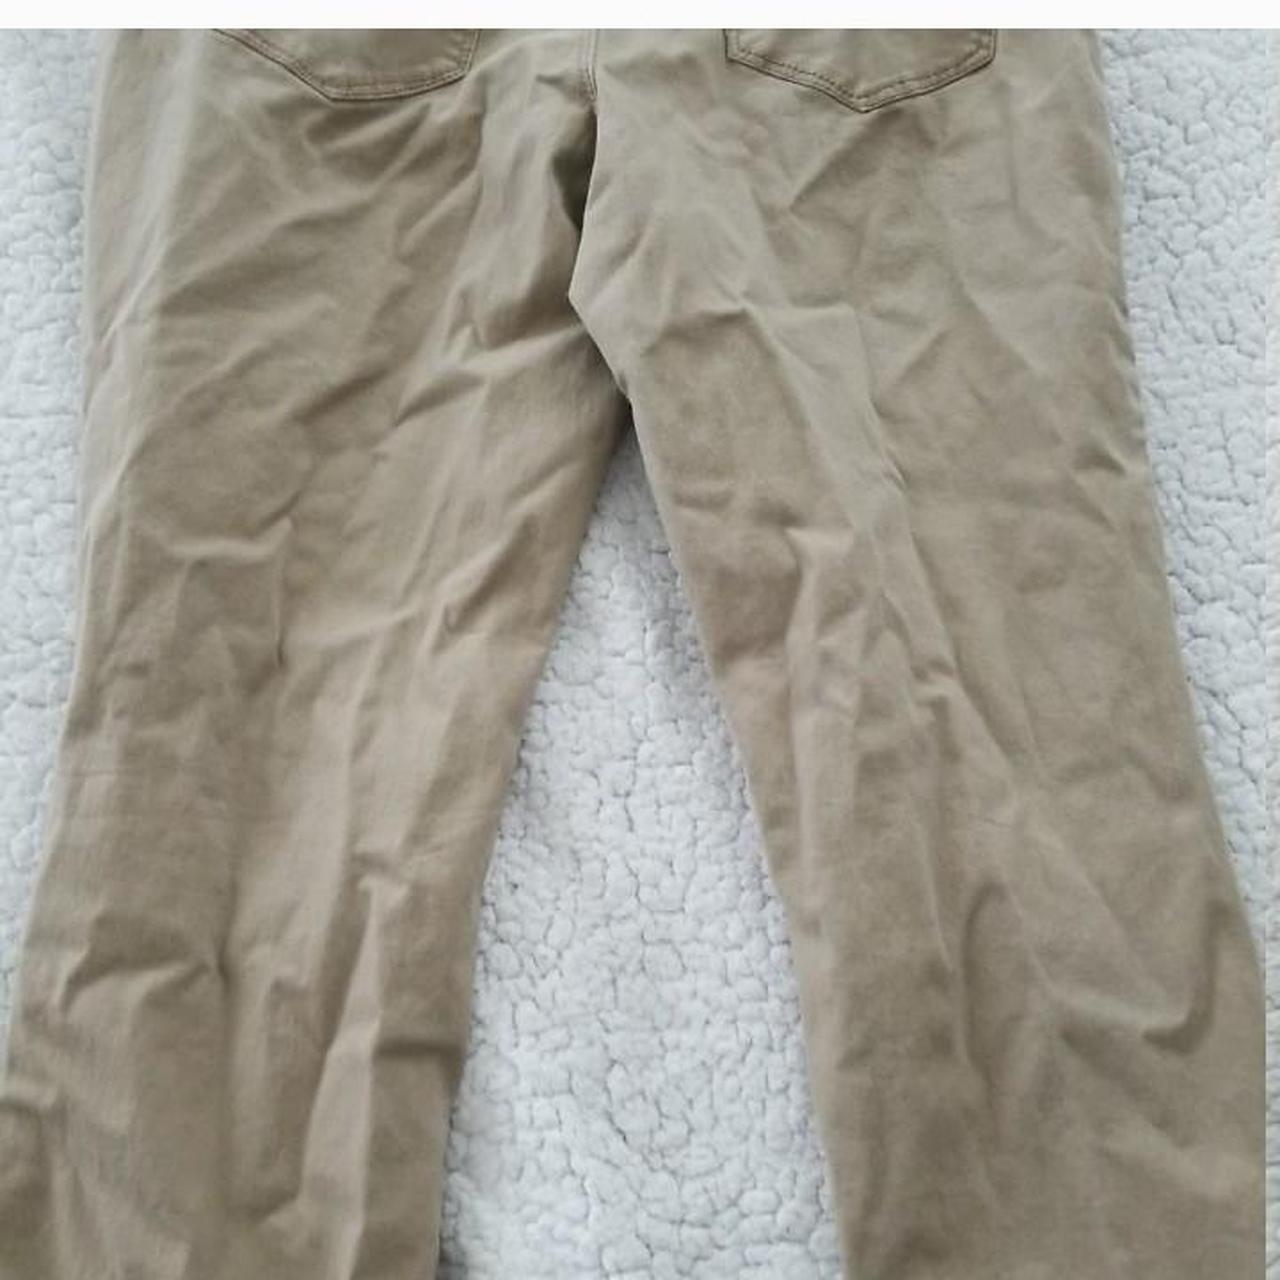 no boundaries tactical pants size: 7 medium to - Depop